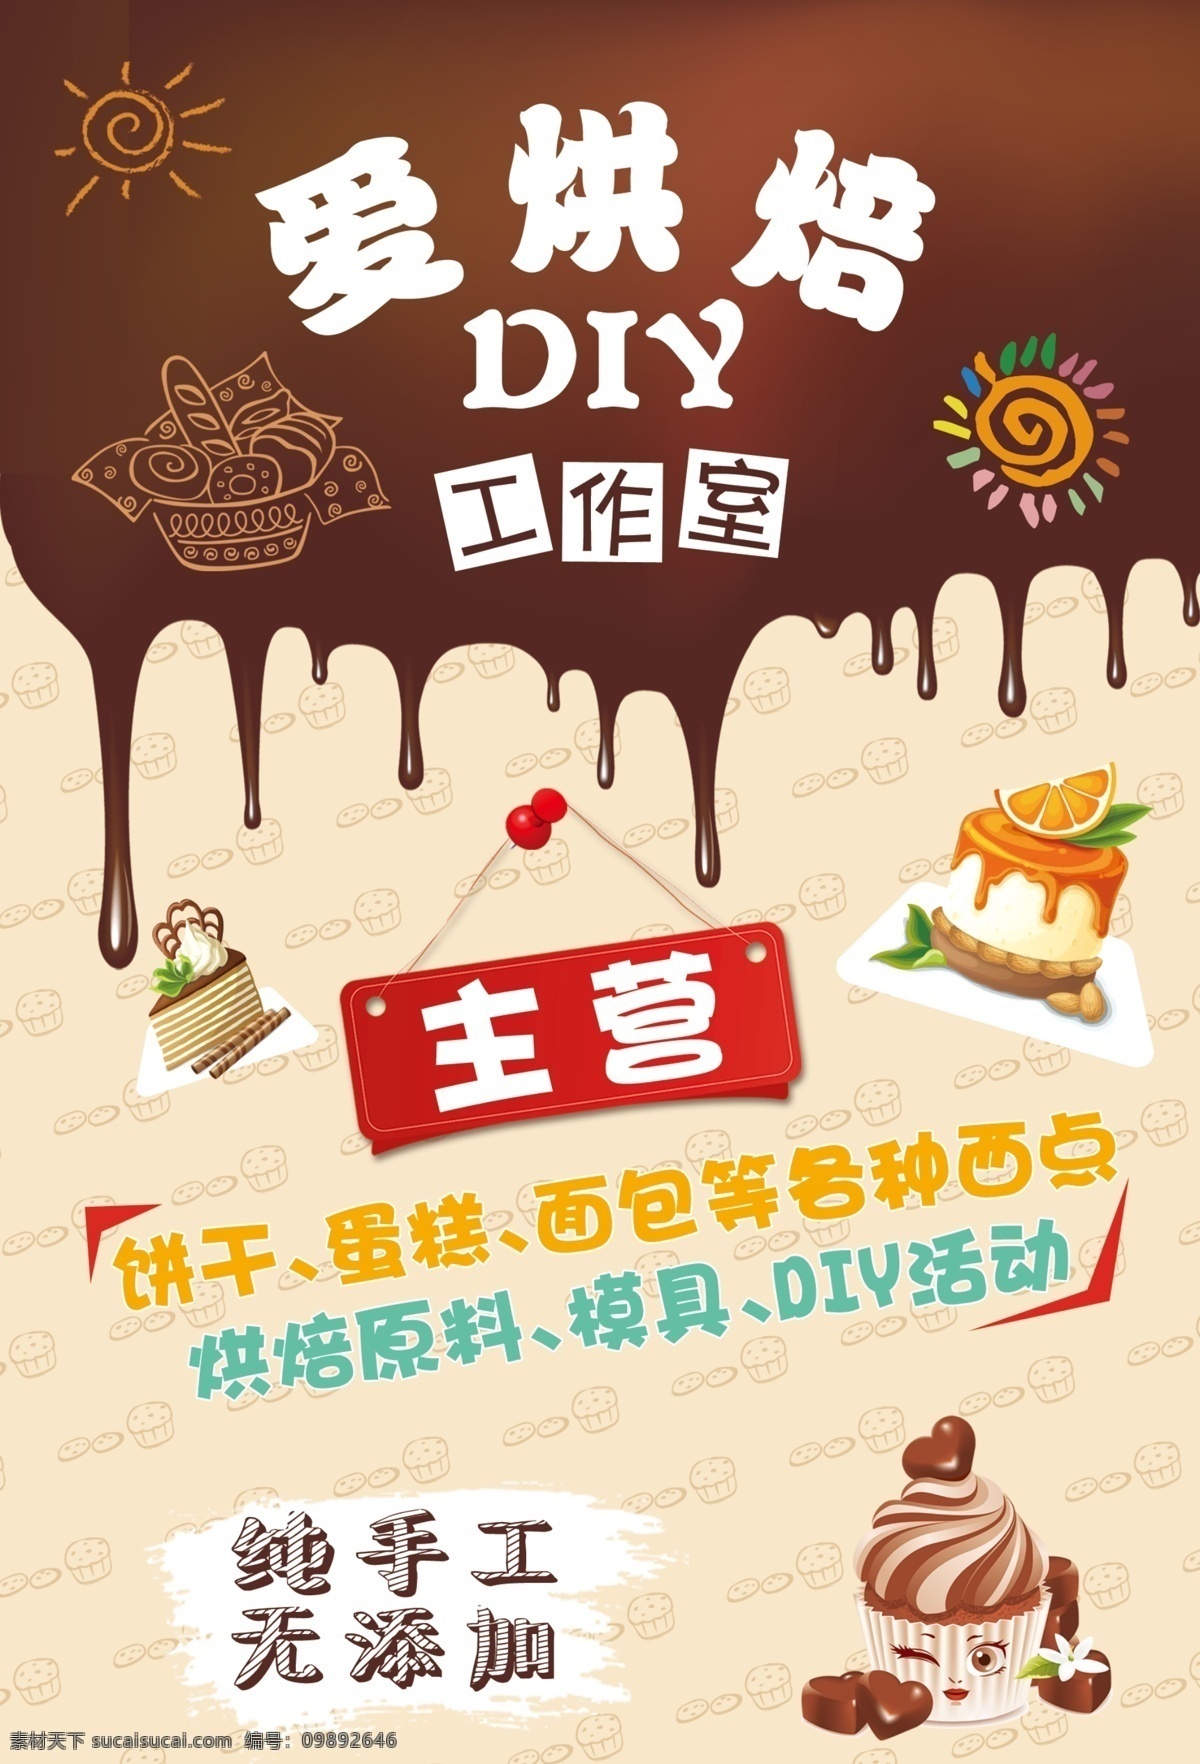 diy 烘焙 宣传单 海报 烘焙宣传单 diy烘焙 巧克力背景 卡通蛋糕 蛋糕宣传单 蛋糕